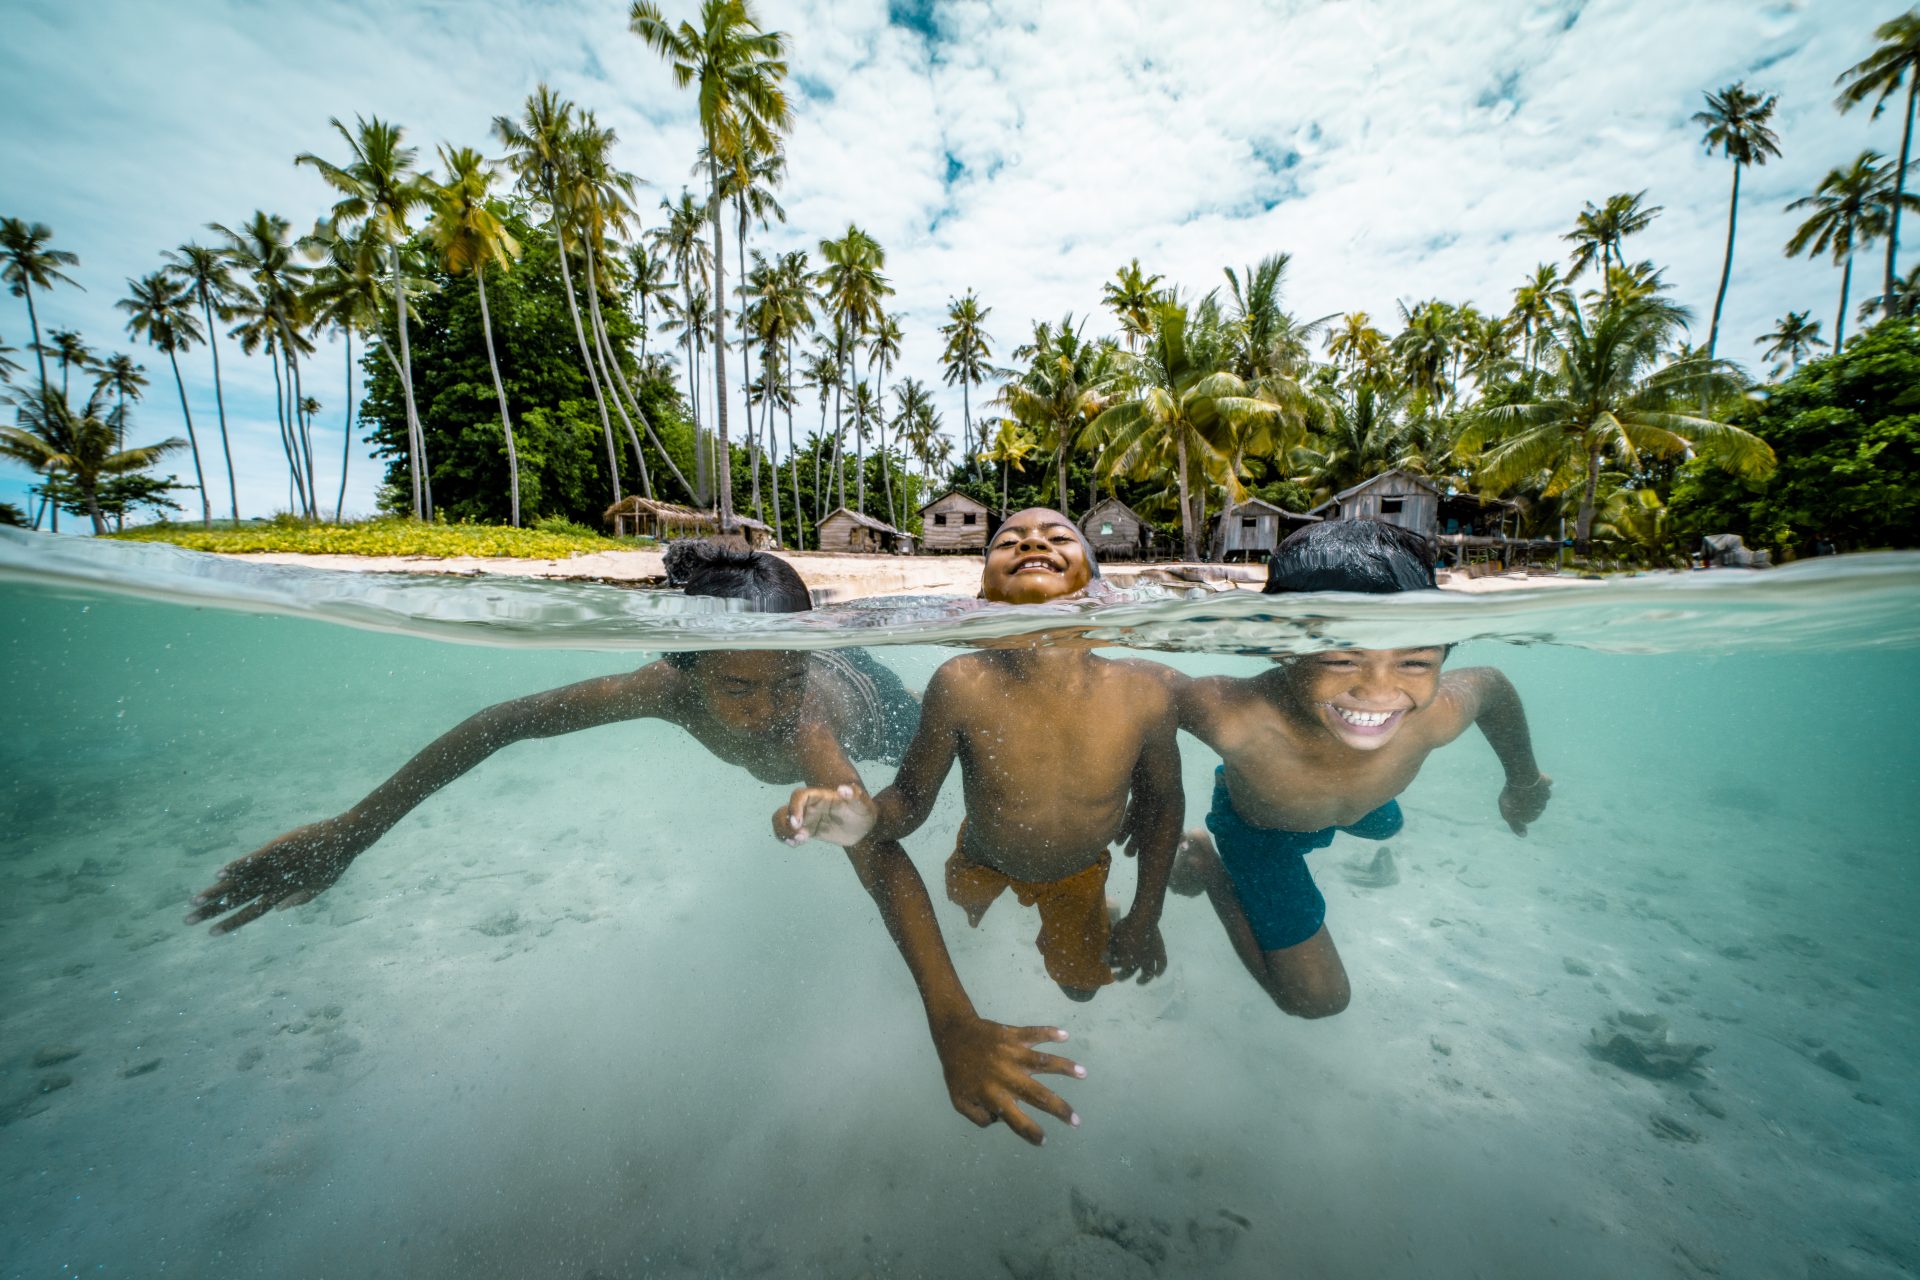 L'incredibile vita dei Bajau, il popolo con una mutazione genetica che vive nel mare